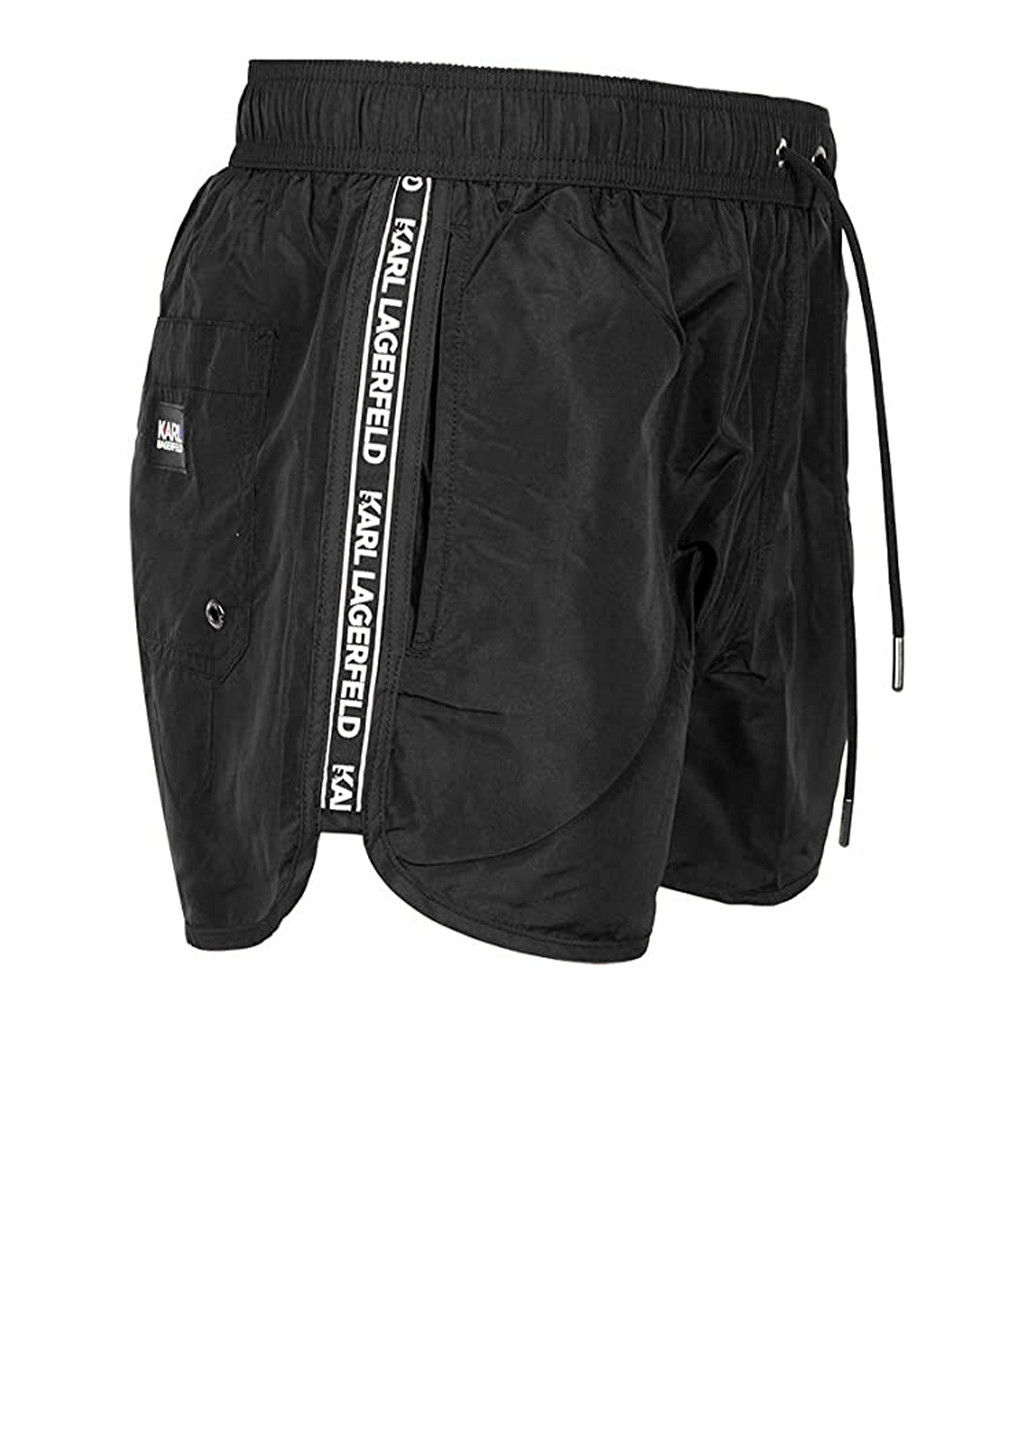 Мужские черные пляжные короткие пляжные шорты с логотипом Karl Lagerfeld